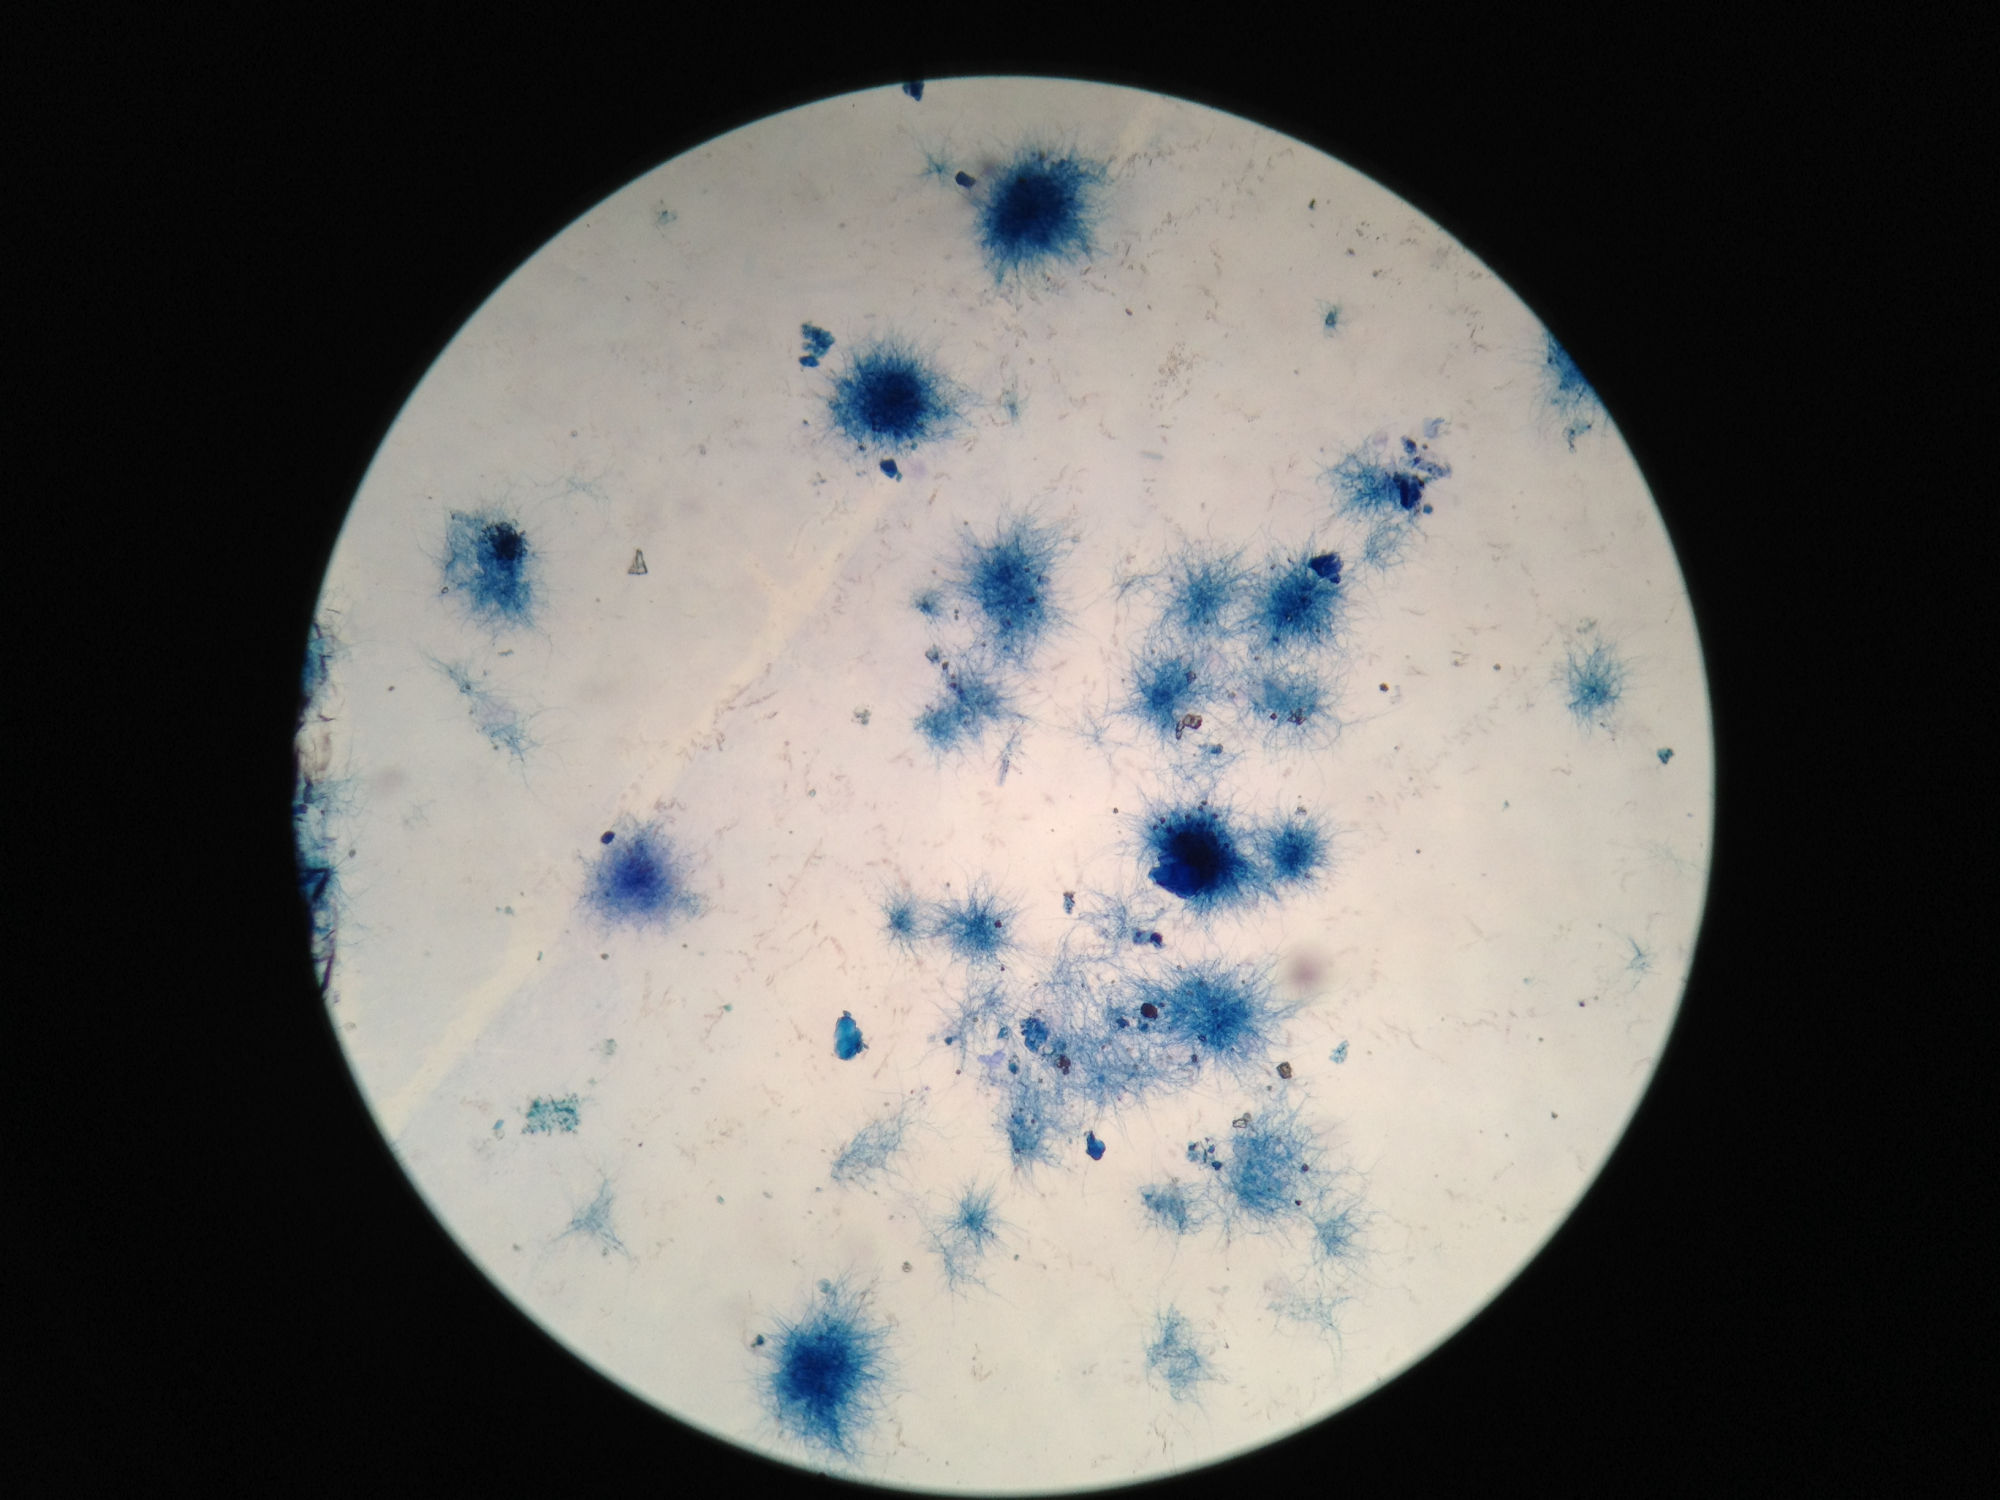 Foto da imagem de microscópio da cultura em laboratório da bactéria Saccharopolyspora erythraea